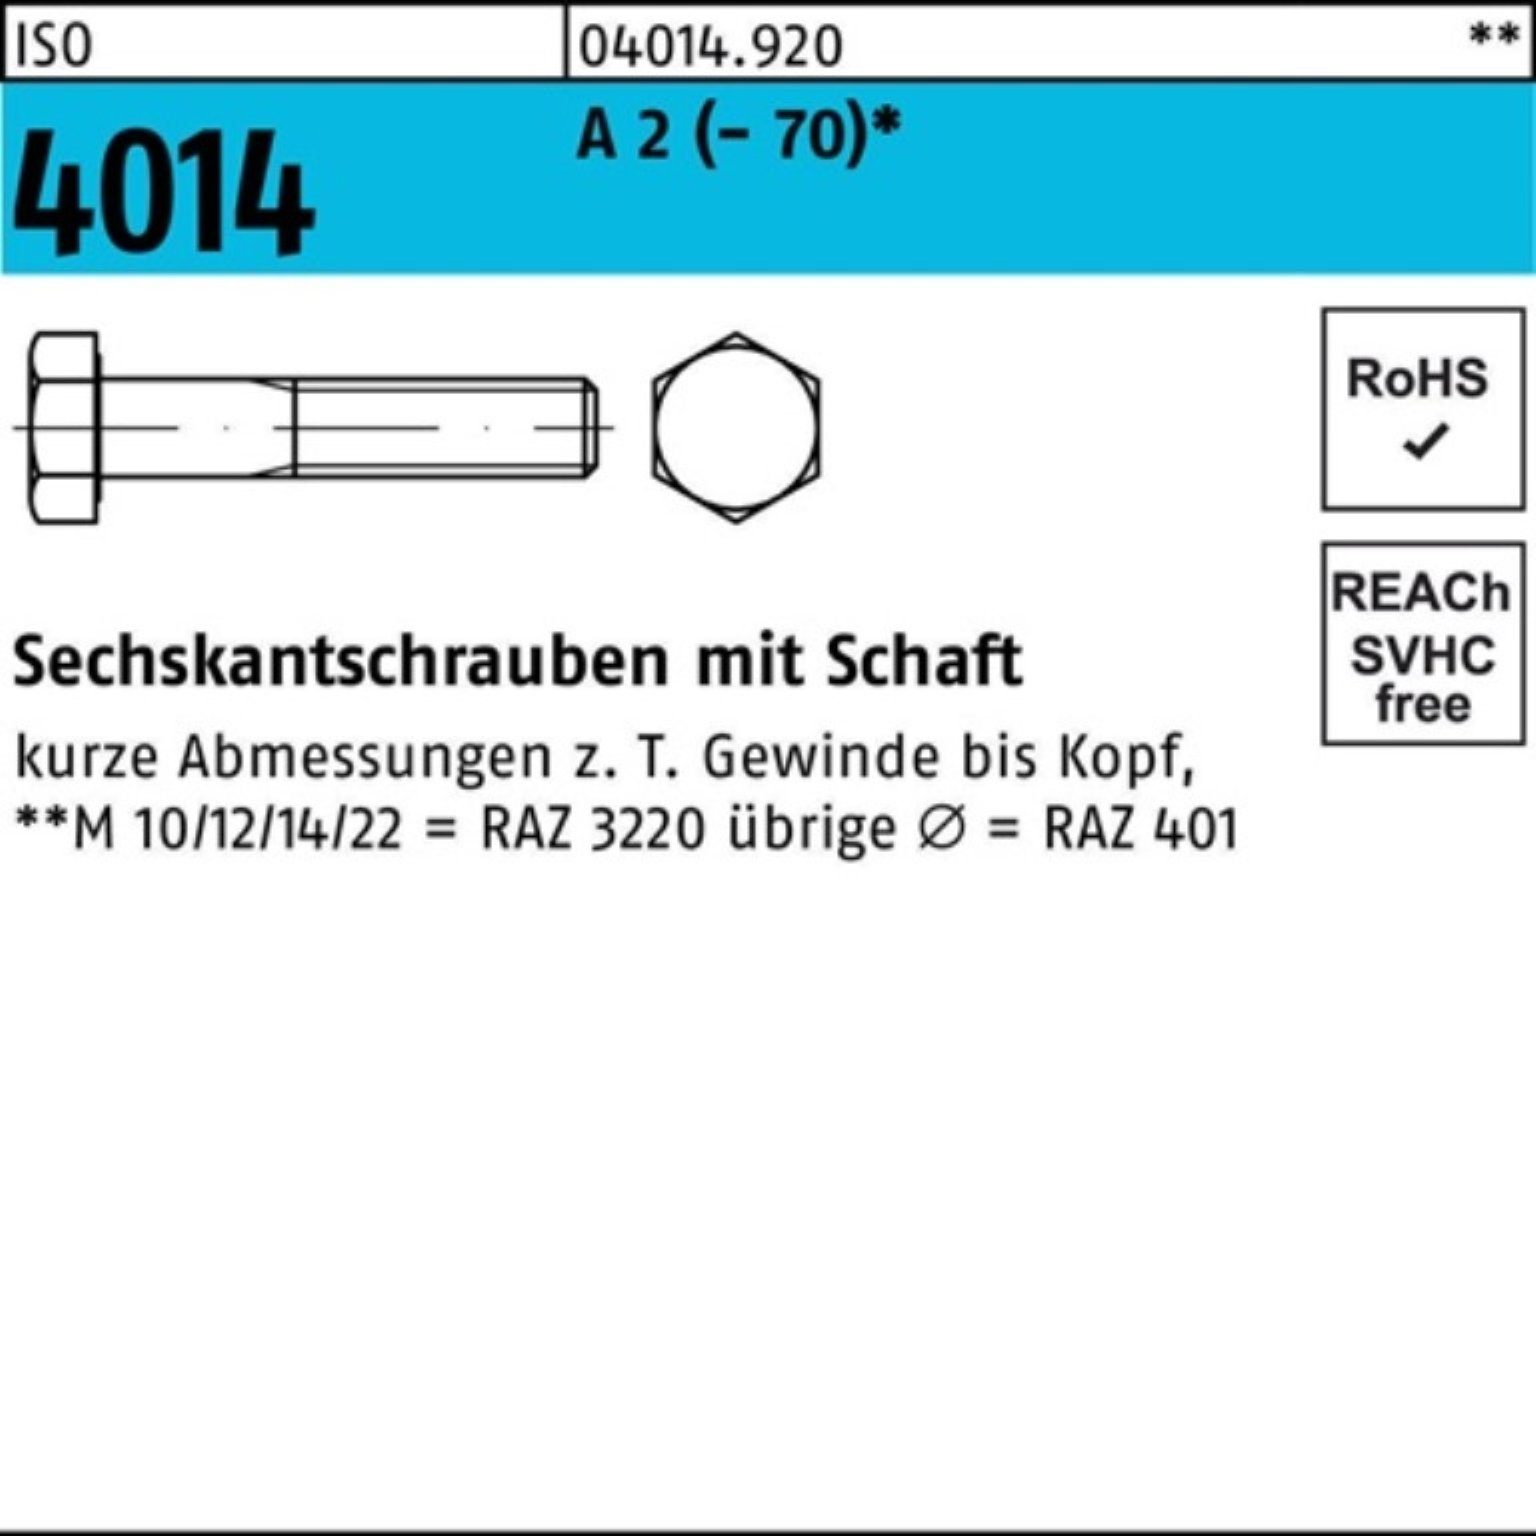 ISO Sechskantschraube 4014 St 2 Sechskantschraube 100er 50 M12x Schaft 80 (70) A Pack Bufab